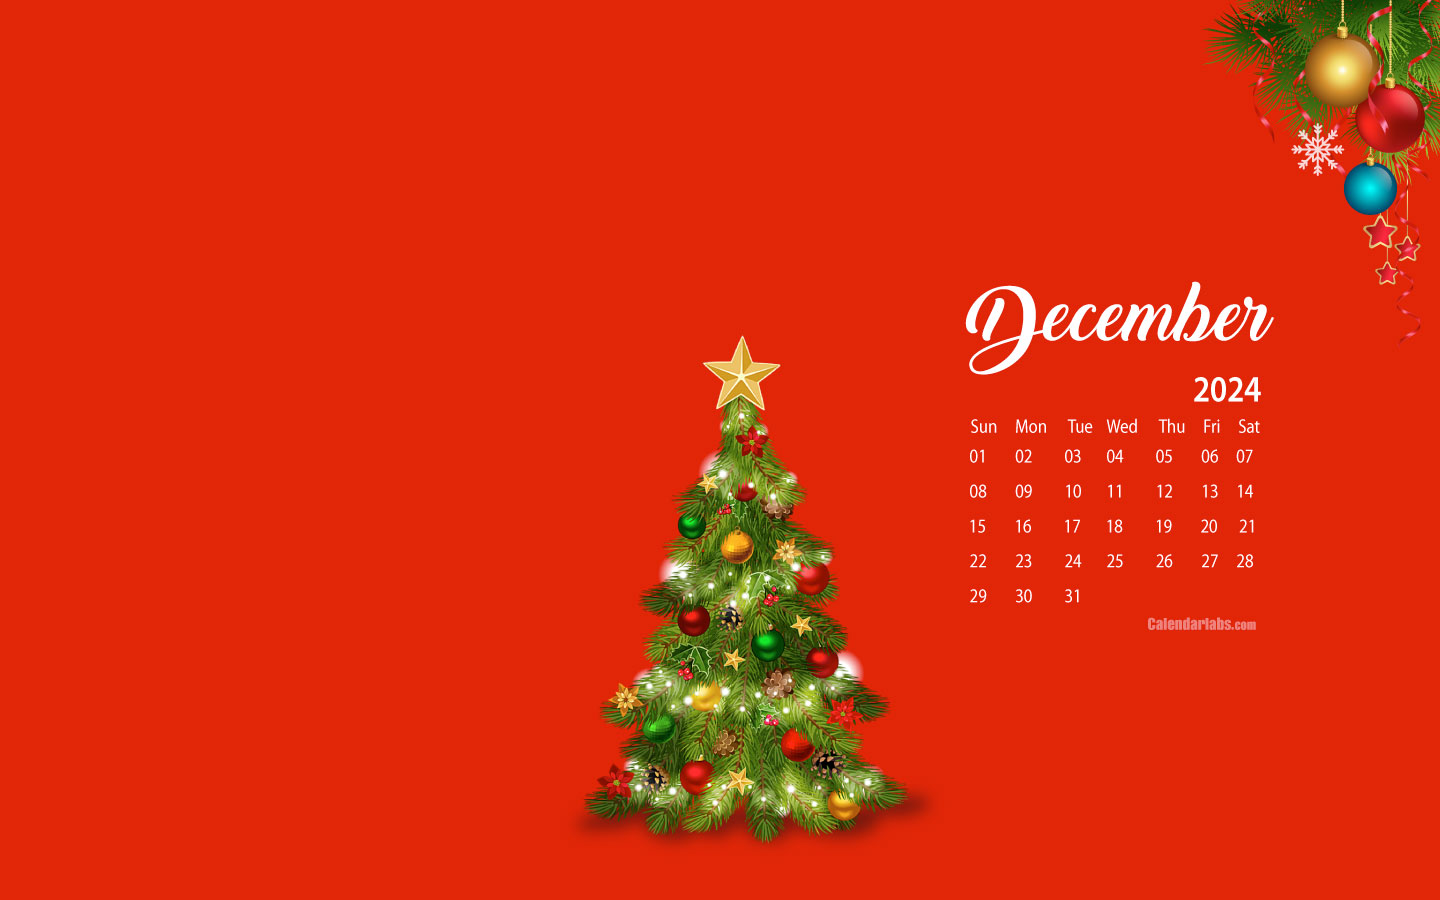 December 2024 Desktop Wallpaper Calendar CalendarLabs